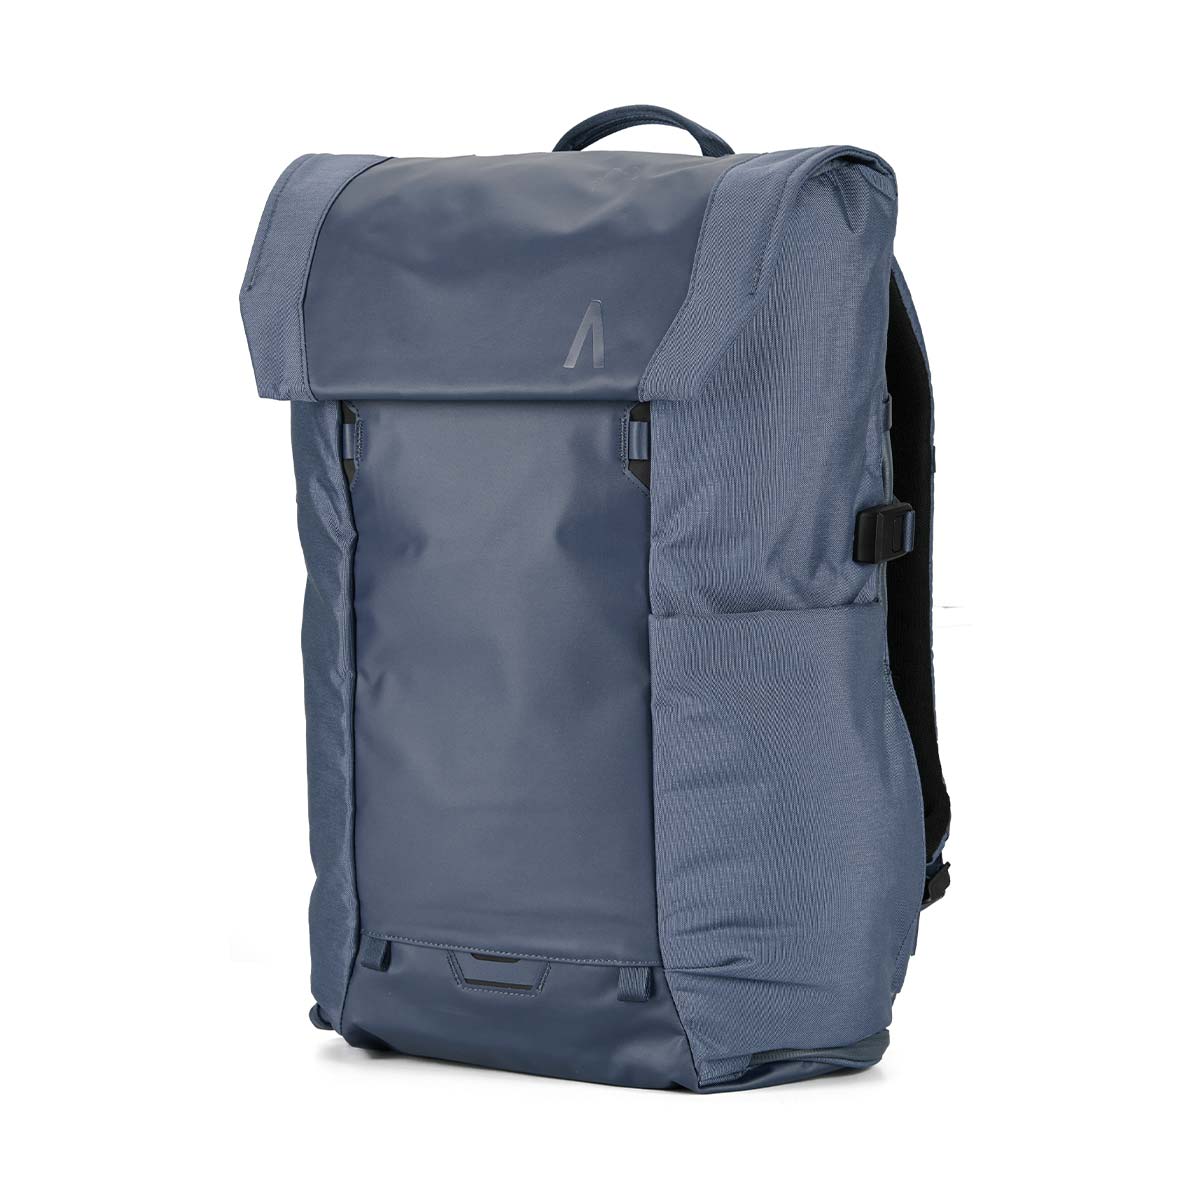 Boundary Supply Errant Pack Backpack Starter Kit (Slate Blue)